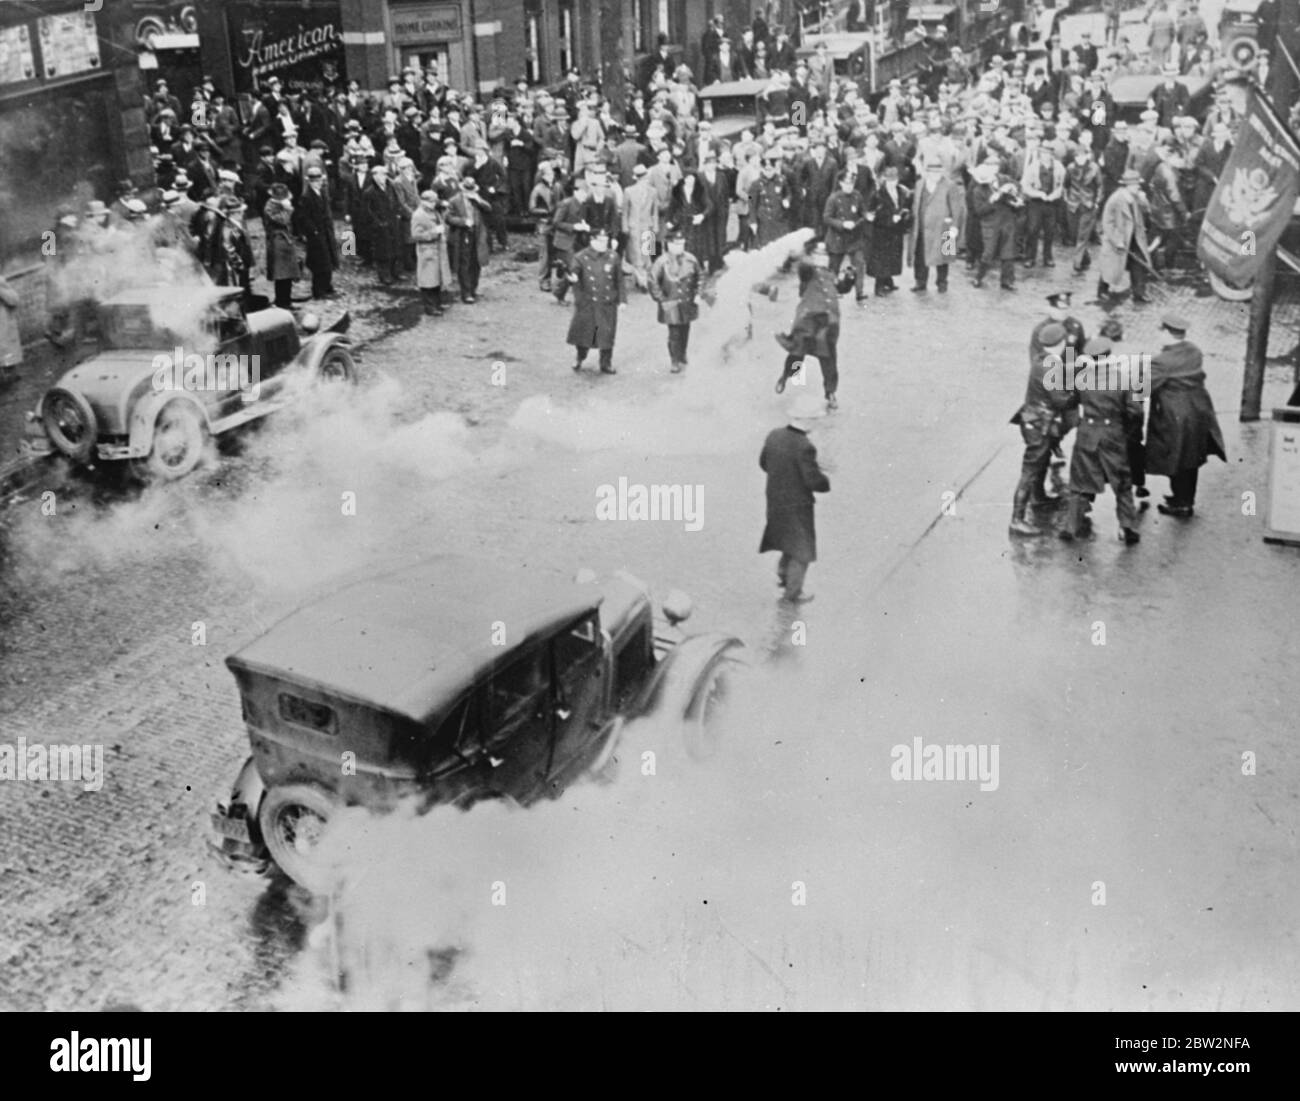 Die Polizei benutzt Tränengas, um rote Unruhen in Pennsylvania zu brechen. Tränengas wurde von der Polizei von McKeesport, Pennysylvania verwendet, um einen Aufstand zu brechen, wenn Kommunisten versuchten, eine Sitzung auf der Straße in Trotz des stadtrats zu halten. Acht Personen, darunter zwei Frauen, wurden verhaftet. Eine Szene während des Aufruhrs, die das Tränengas zeigt, das herumschwimmt und einen Randalierer (rechts), der von der Polizei verhaftet wird. 14 Februar 1932 Stockfoto